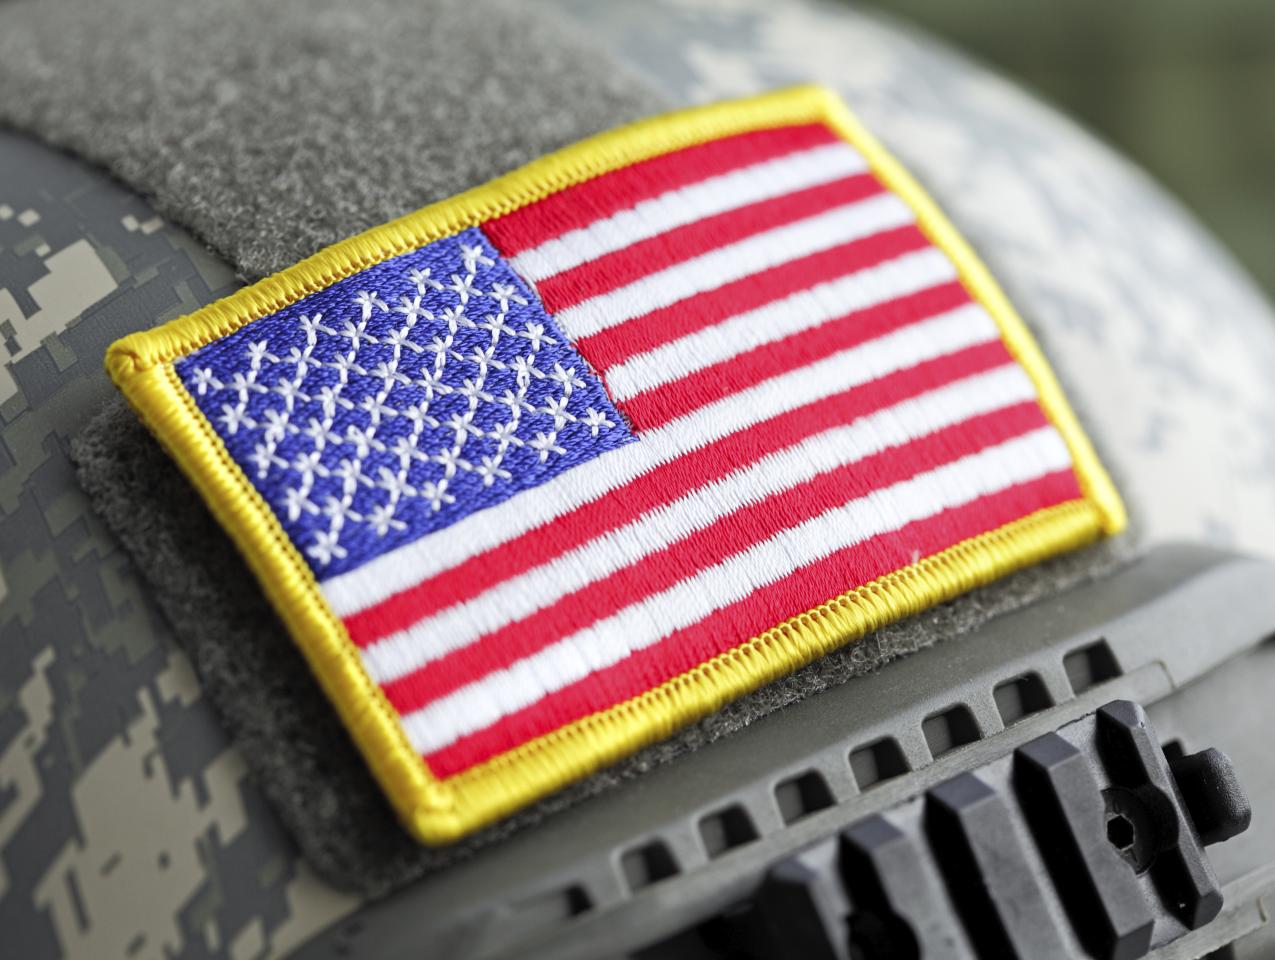 US flag on military helmet